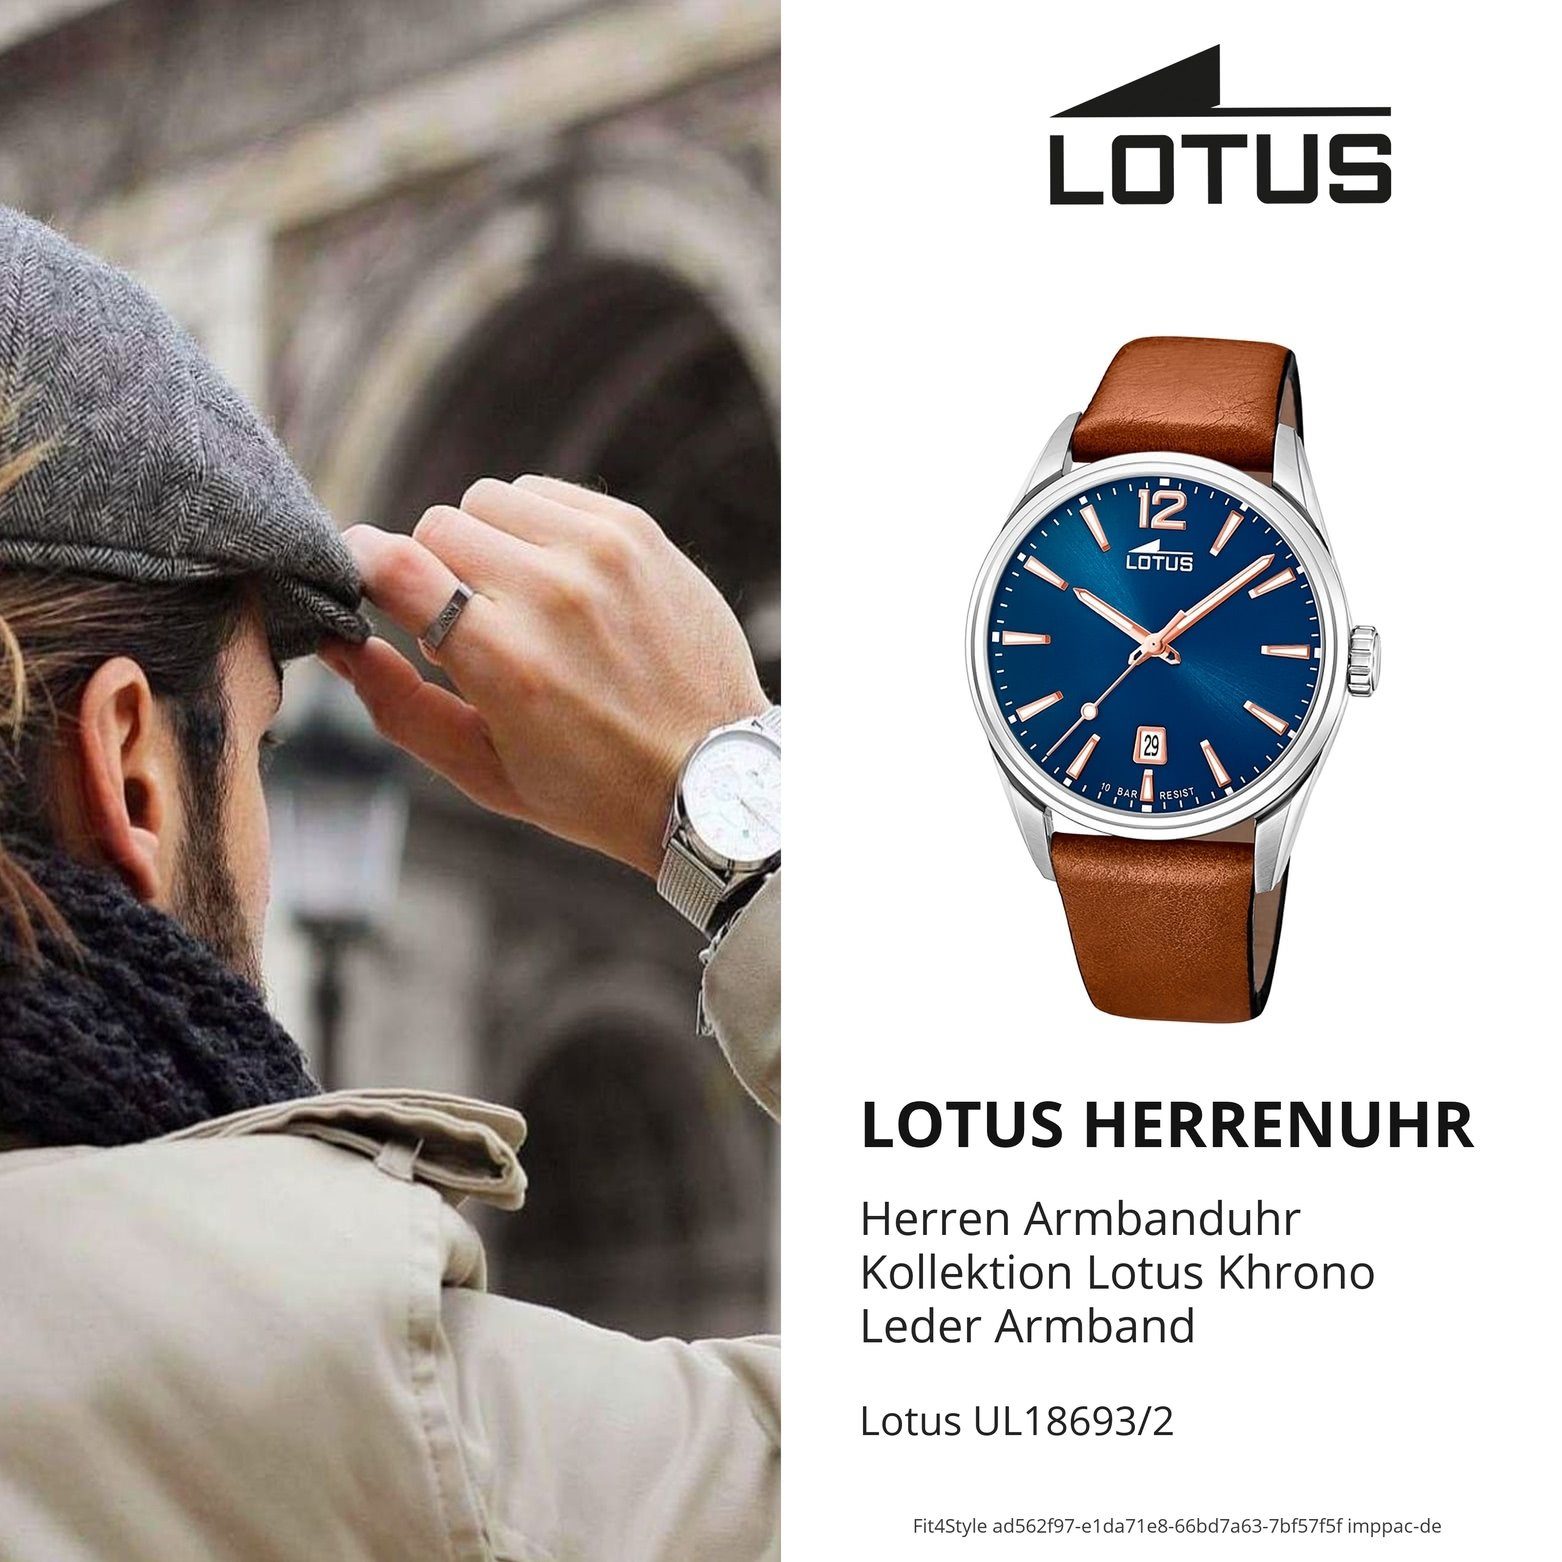 Lotus Lederarmband braun Uhr Quarzuhr 18693/2 Herren groß Elegant (ca. LOTUS Herrenuhr Leder, rund, 42mm)